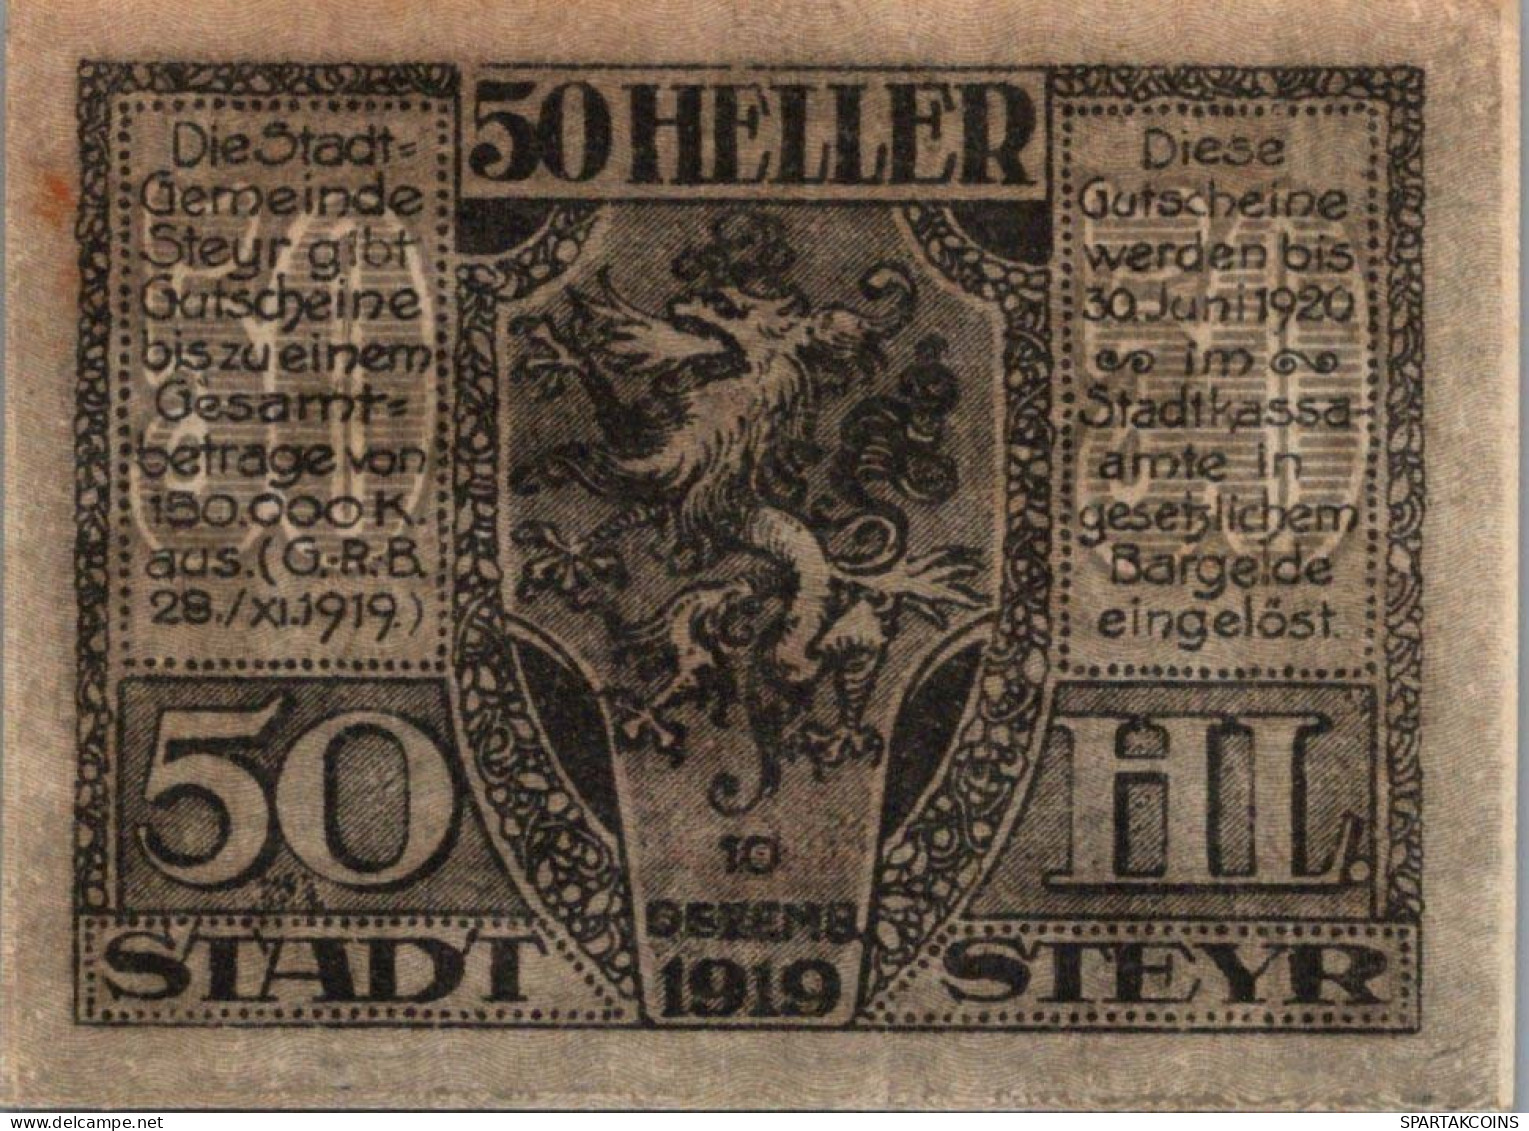 50 HELLER 1920 Stadt STEYR Oberösterreich Österreich Notgeld Banknote #PE842 - Lokale Ausgaben